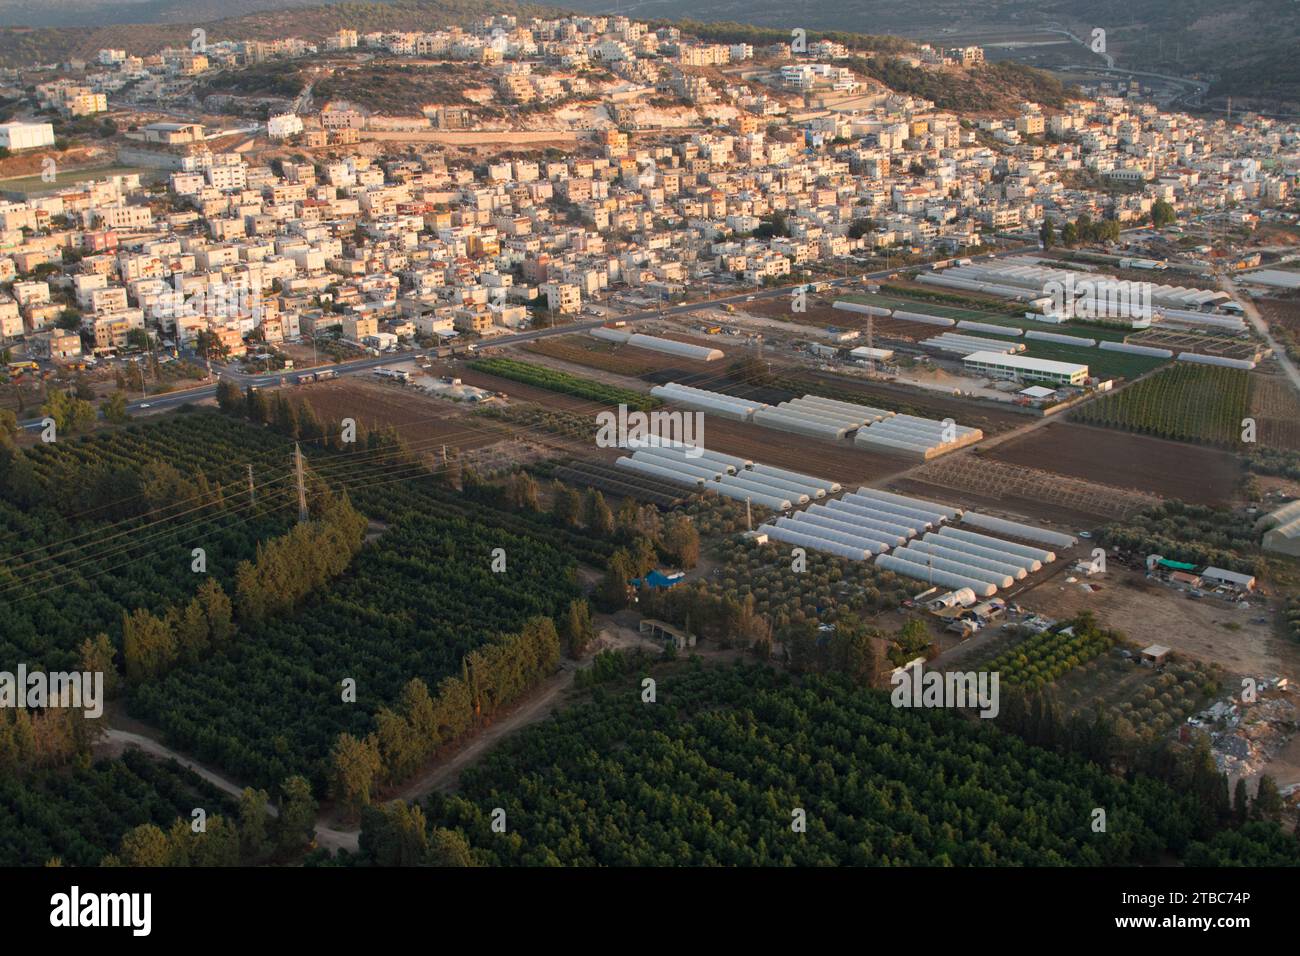 Photographie aérienne de Fureidis- ville arabe en Israël Banque D'Images